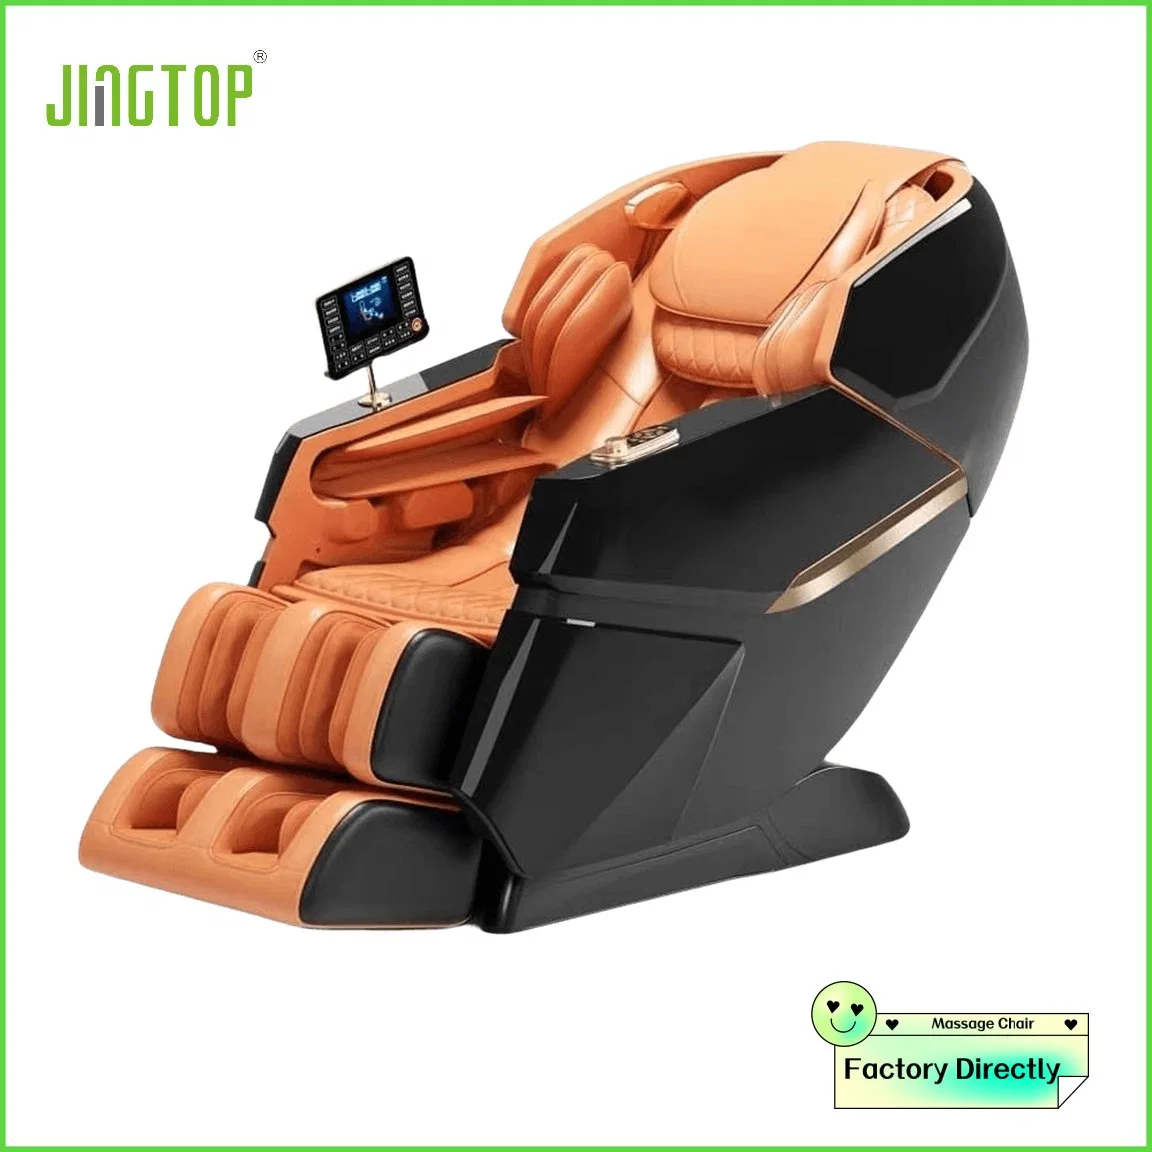 كرسي التدليك التجاري Jingtop Luxury التدليك رباعي الأبعاد SL الوسائد الهوائية الكاملة للجسم كرسي تدليك للعلاج الحراري